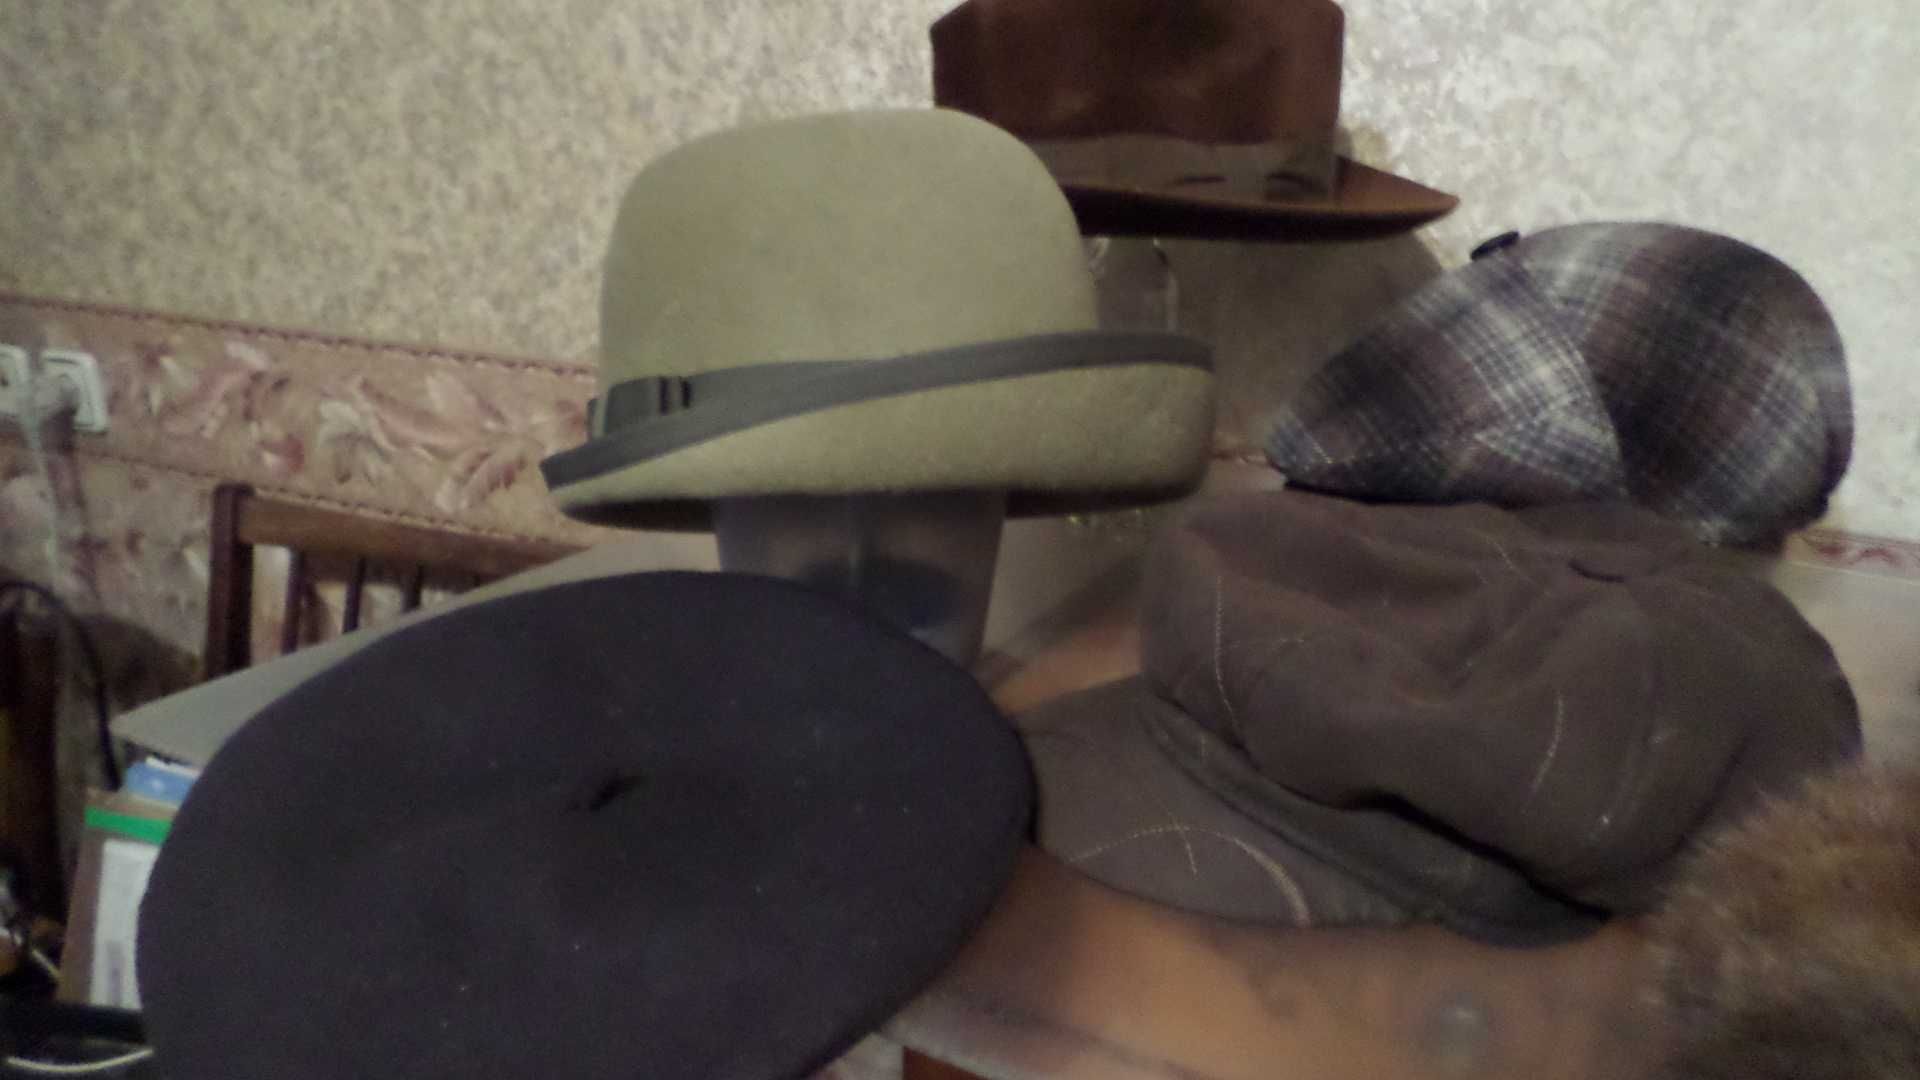 Шапки, шляпы б/у в хорошем состоянии и новые